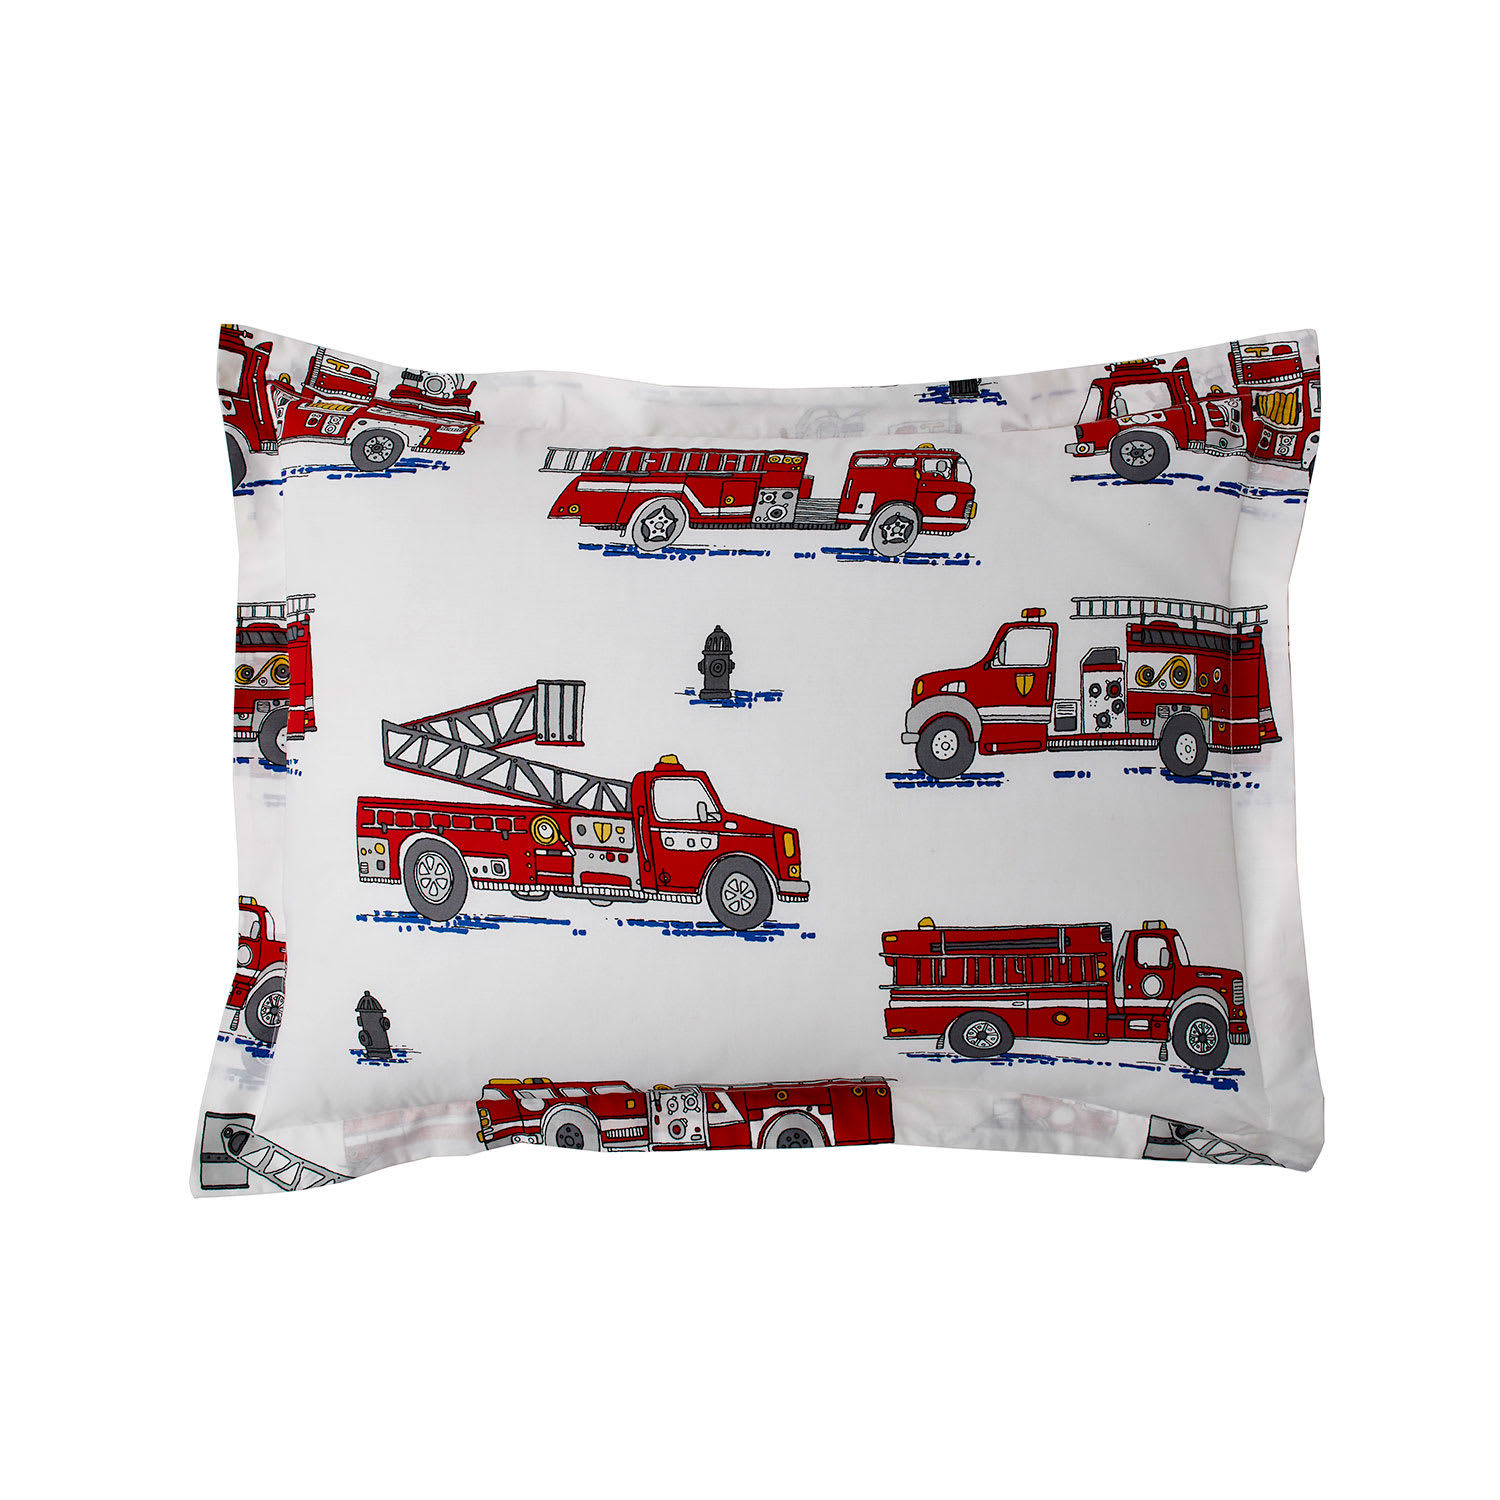 Company Kids™ Fire Truck Cotton Percale Sham - Multi